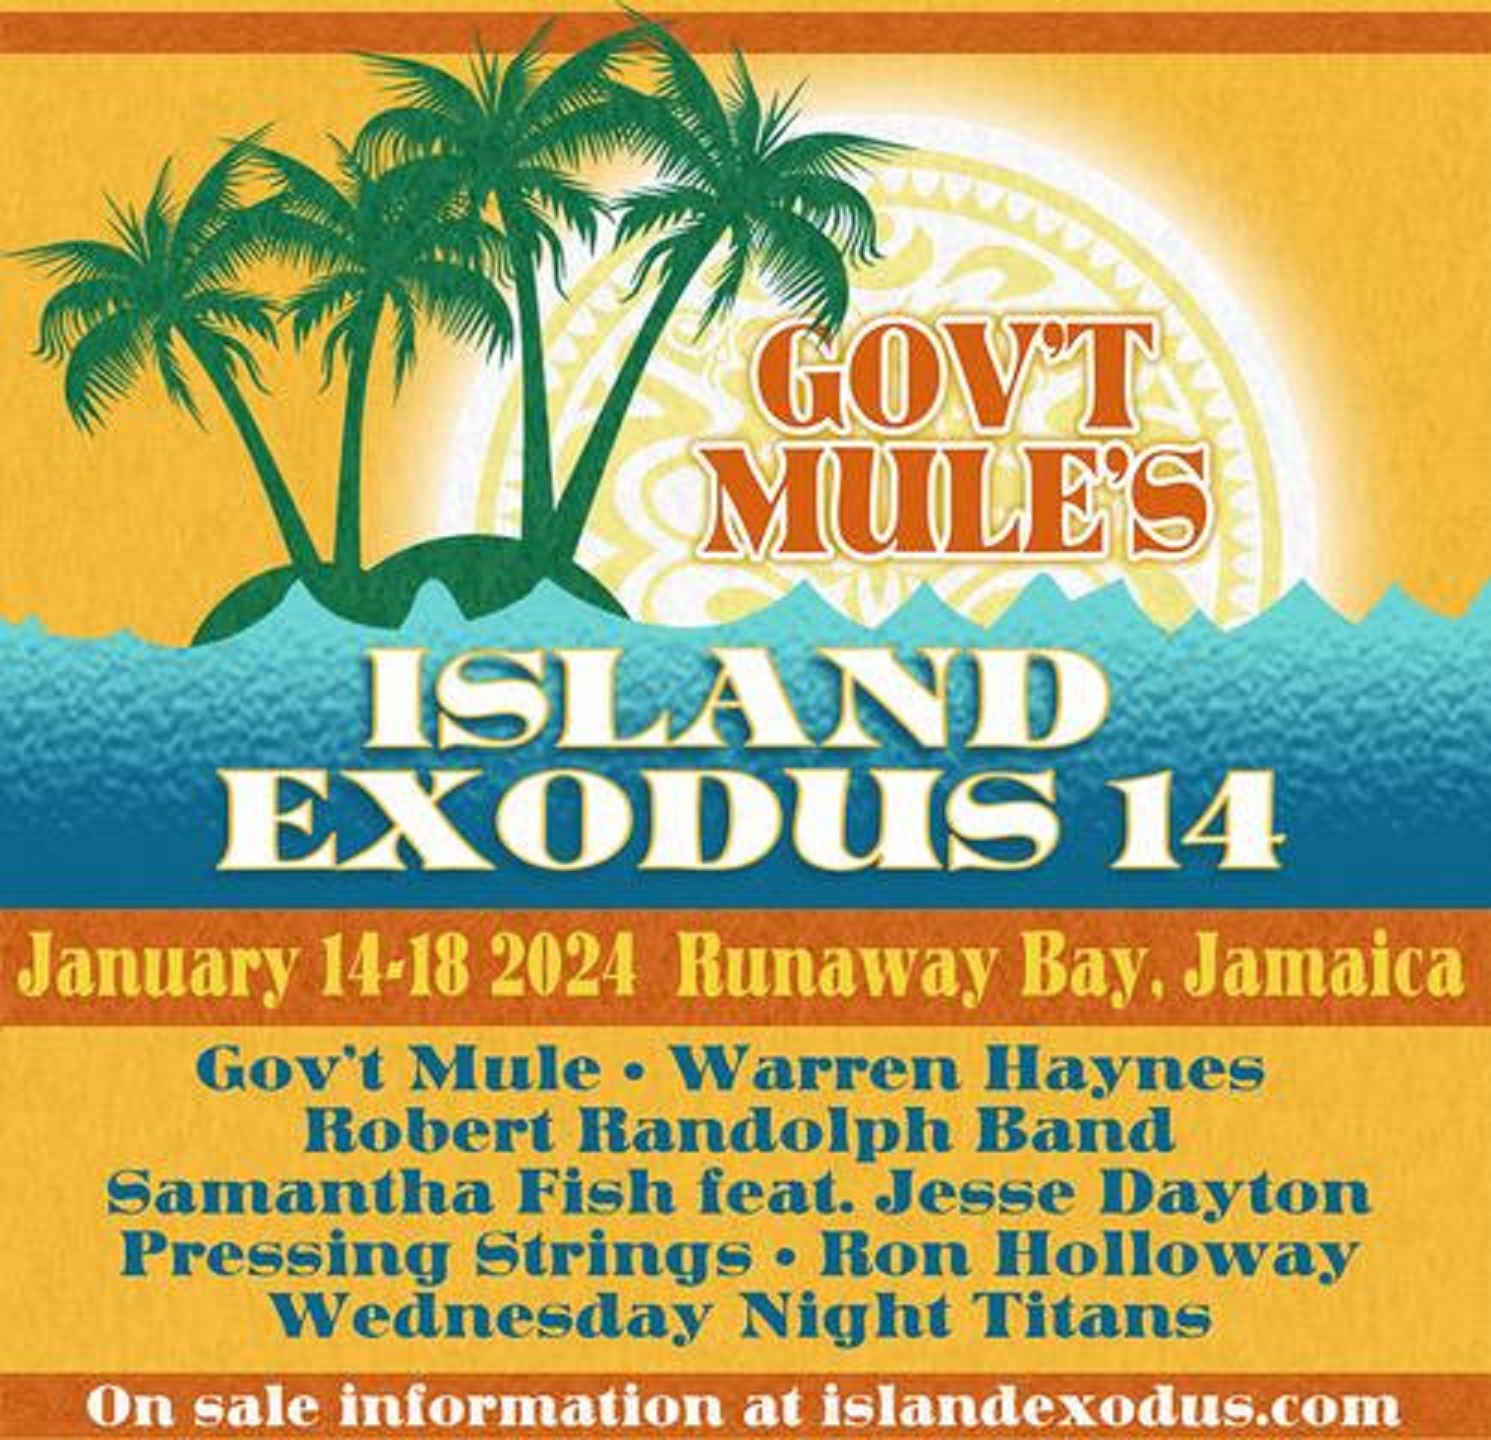 Gov’t Mule Announces Island Exodus 14